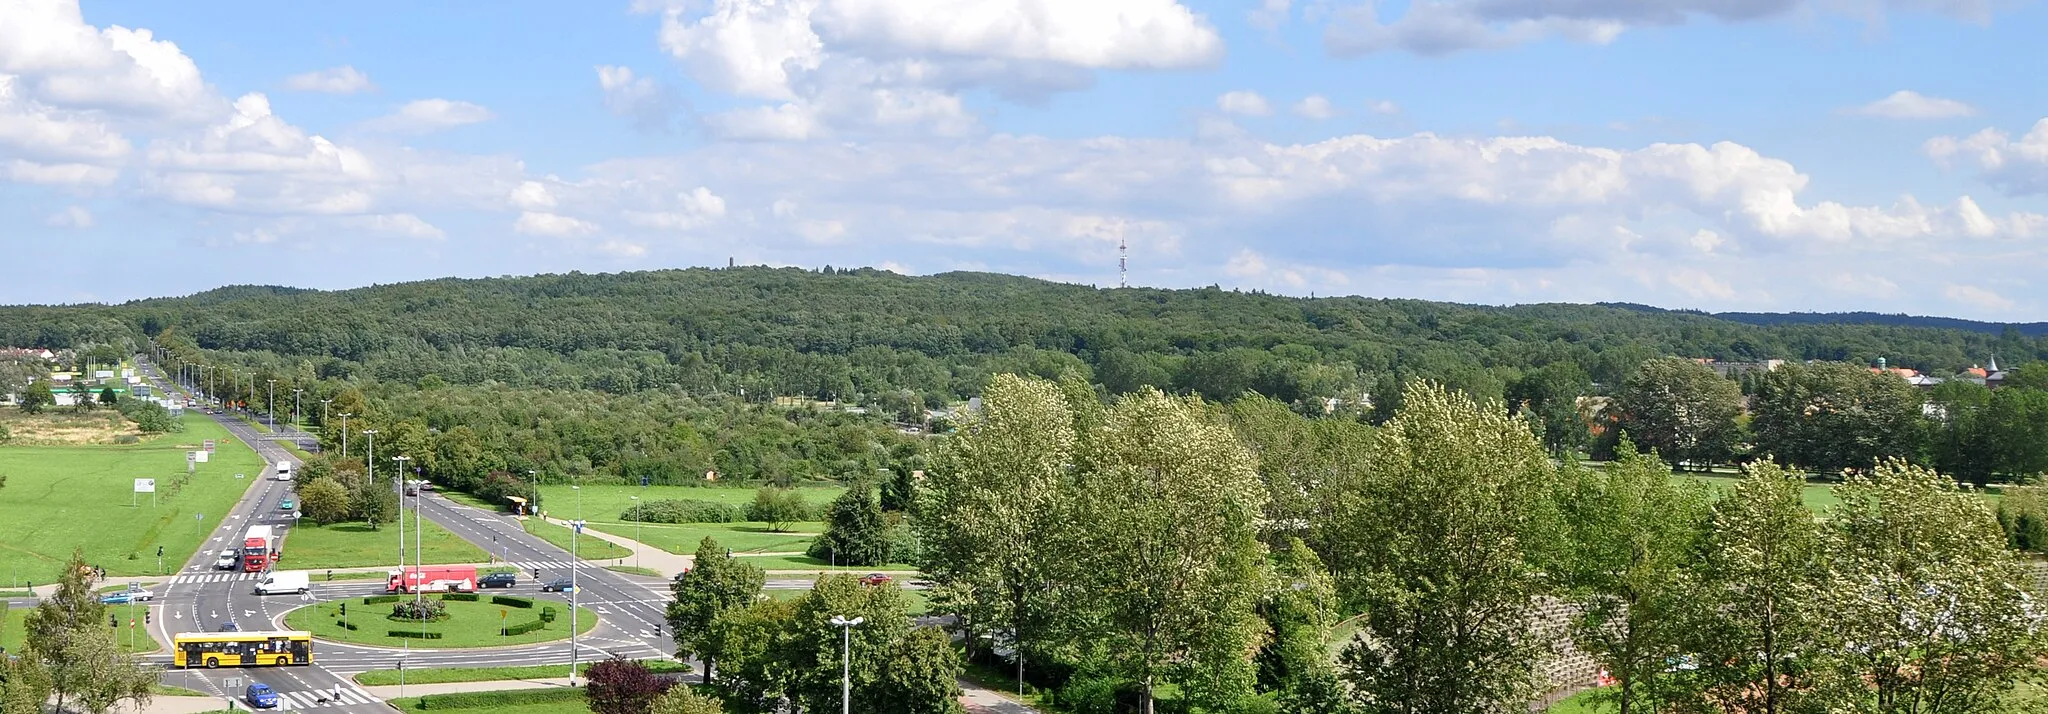 Photo showing: Wał morenowy Góra Chełmska (Gołogóra) – ujęcie z 10. piętra bloku przy Fałata 15 w Koszalinie